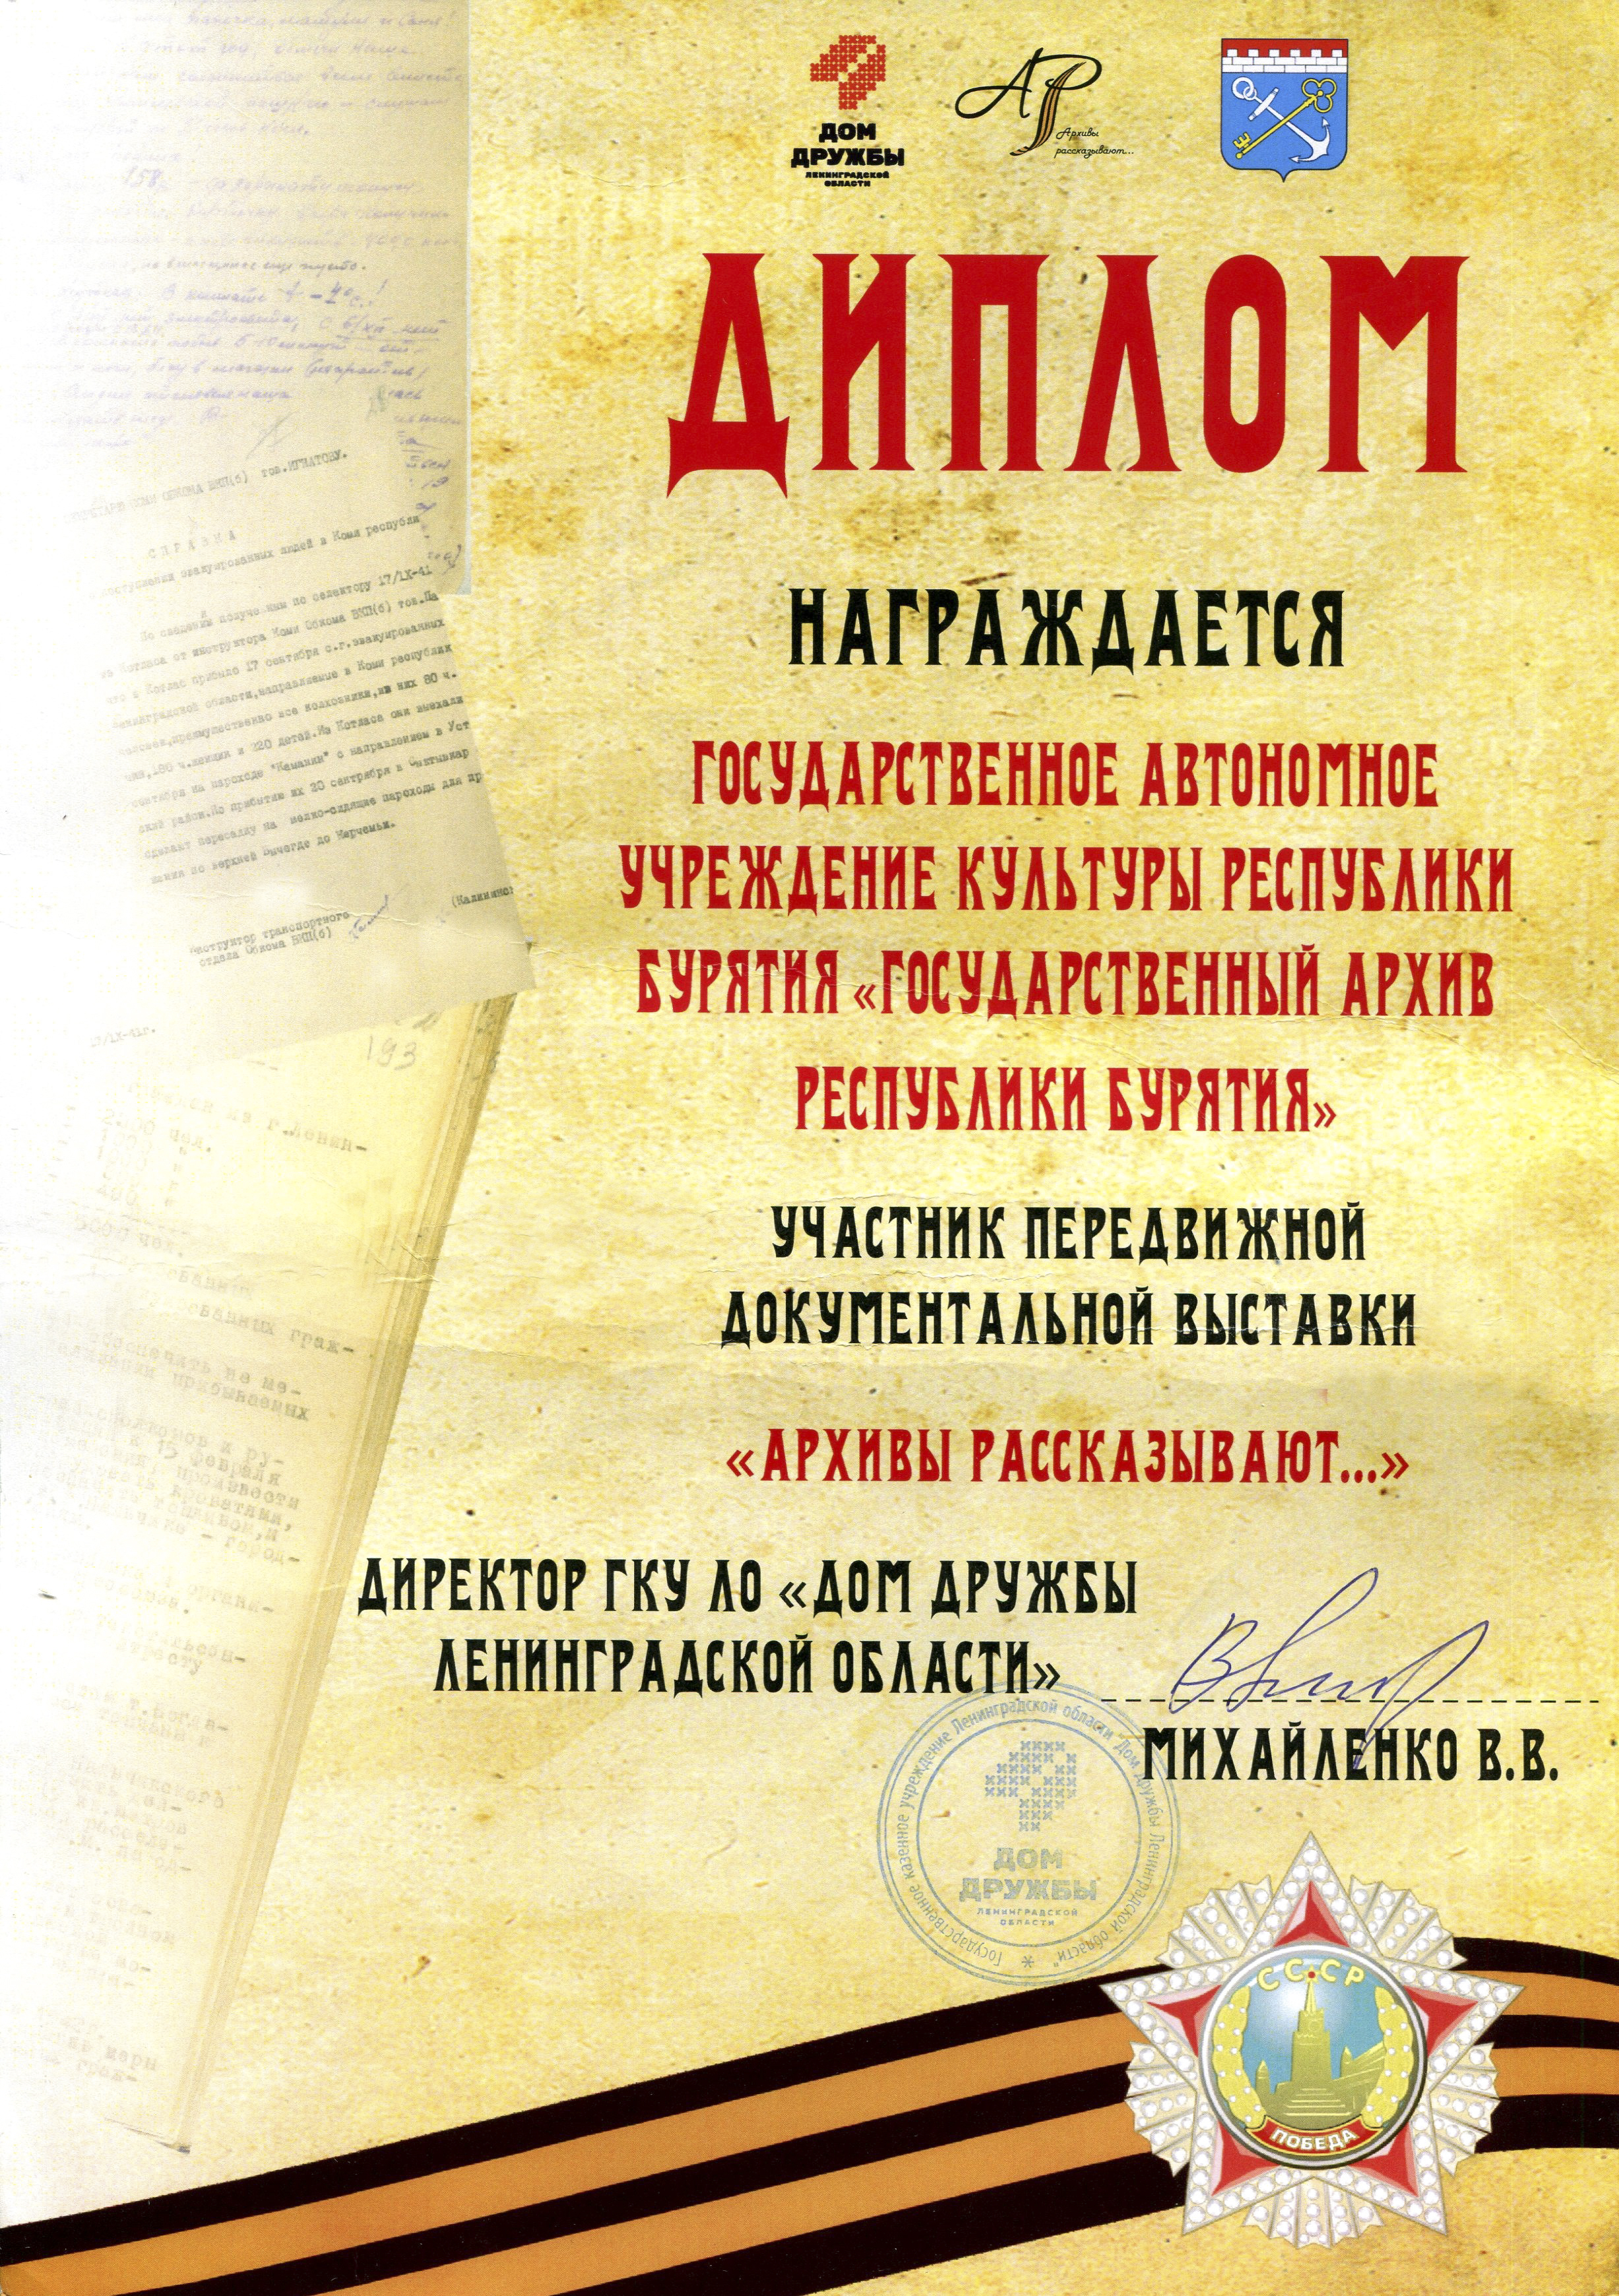 Госархив Бурятии награжден дипломом Дома дружбы Ленинградской области